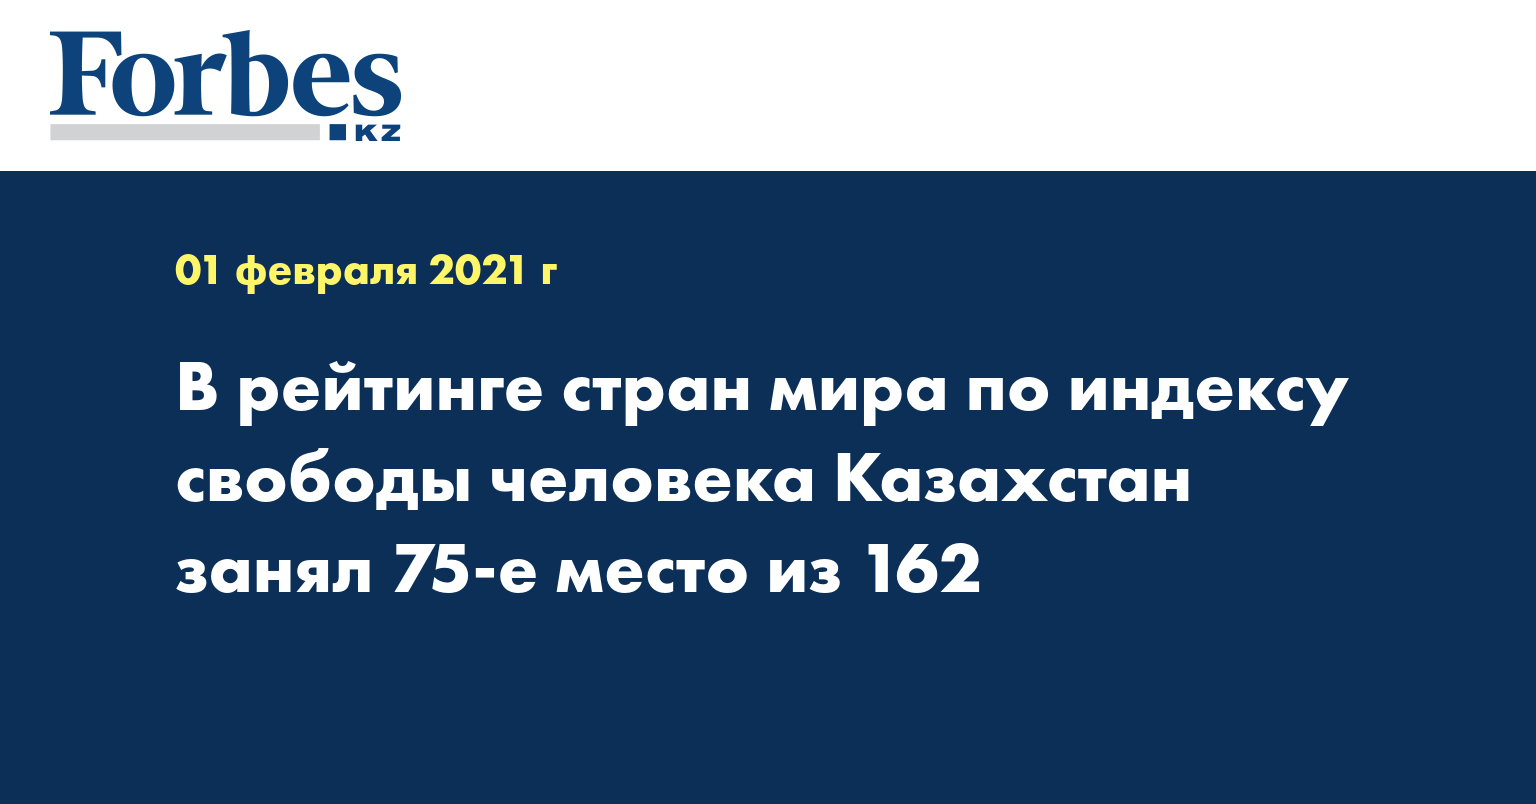 В рейтинге стран мира по индексу свободы человека Казахстан занял 75-е место из 162